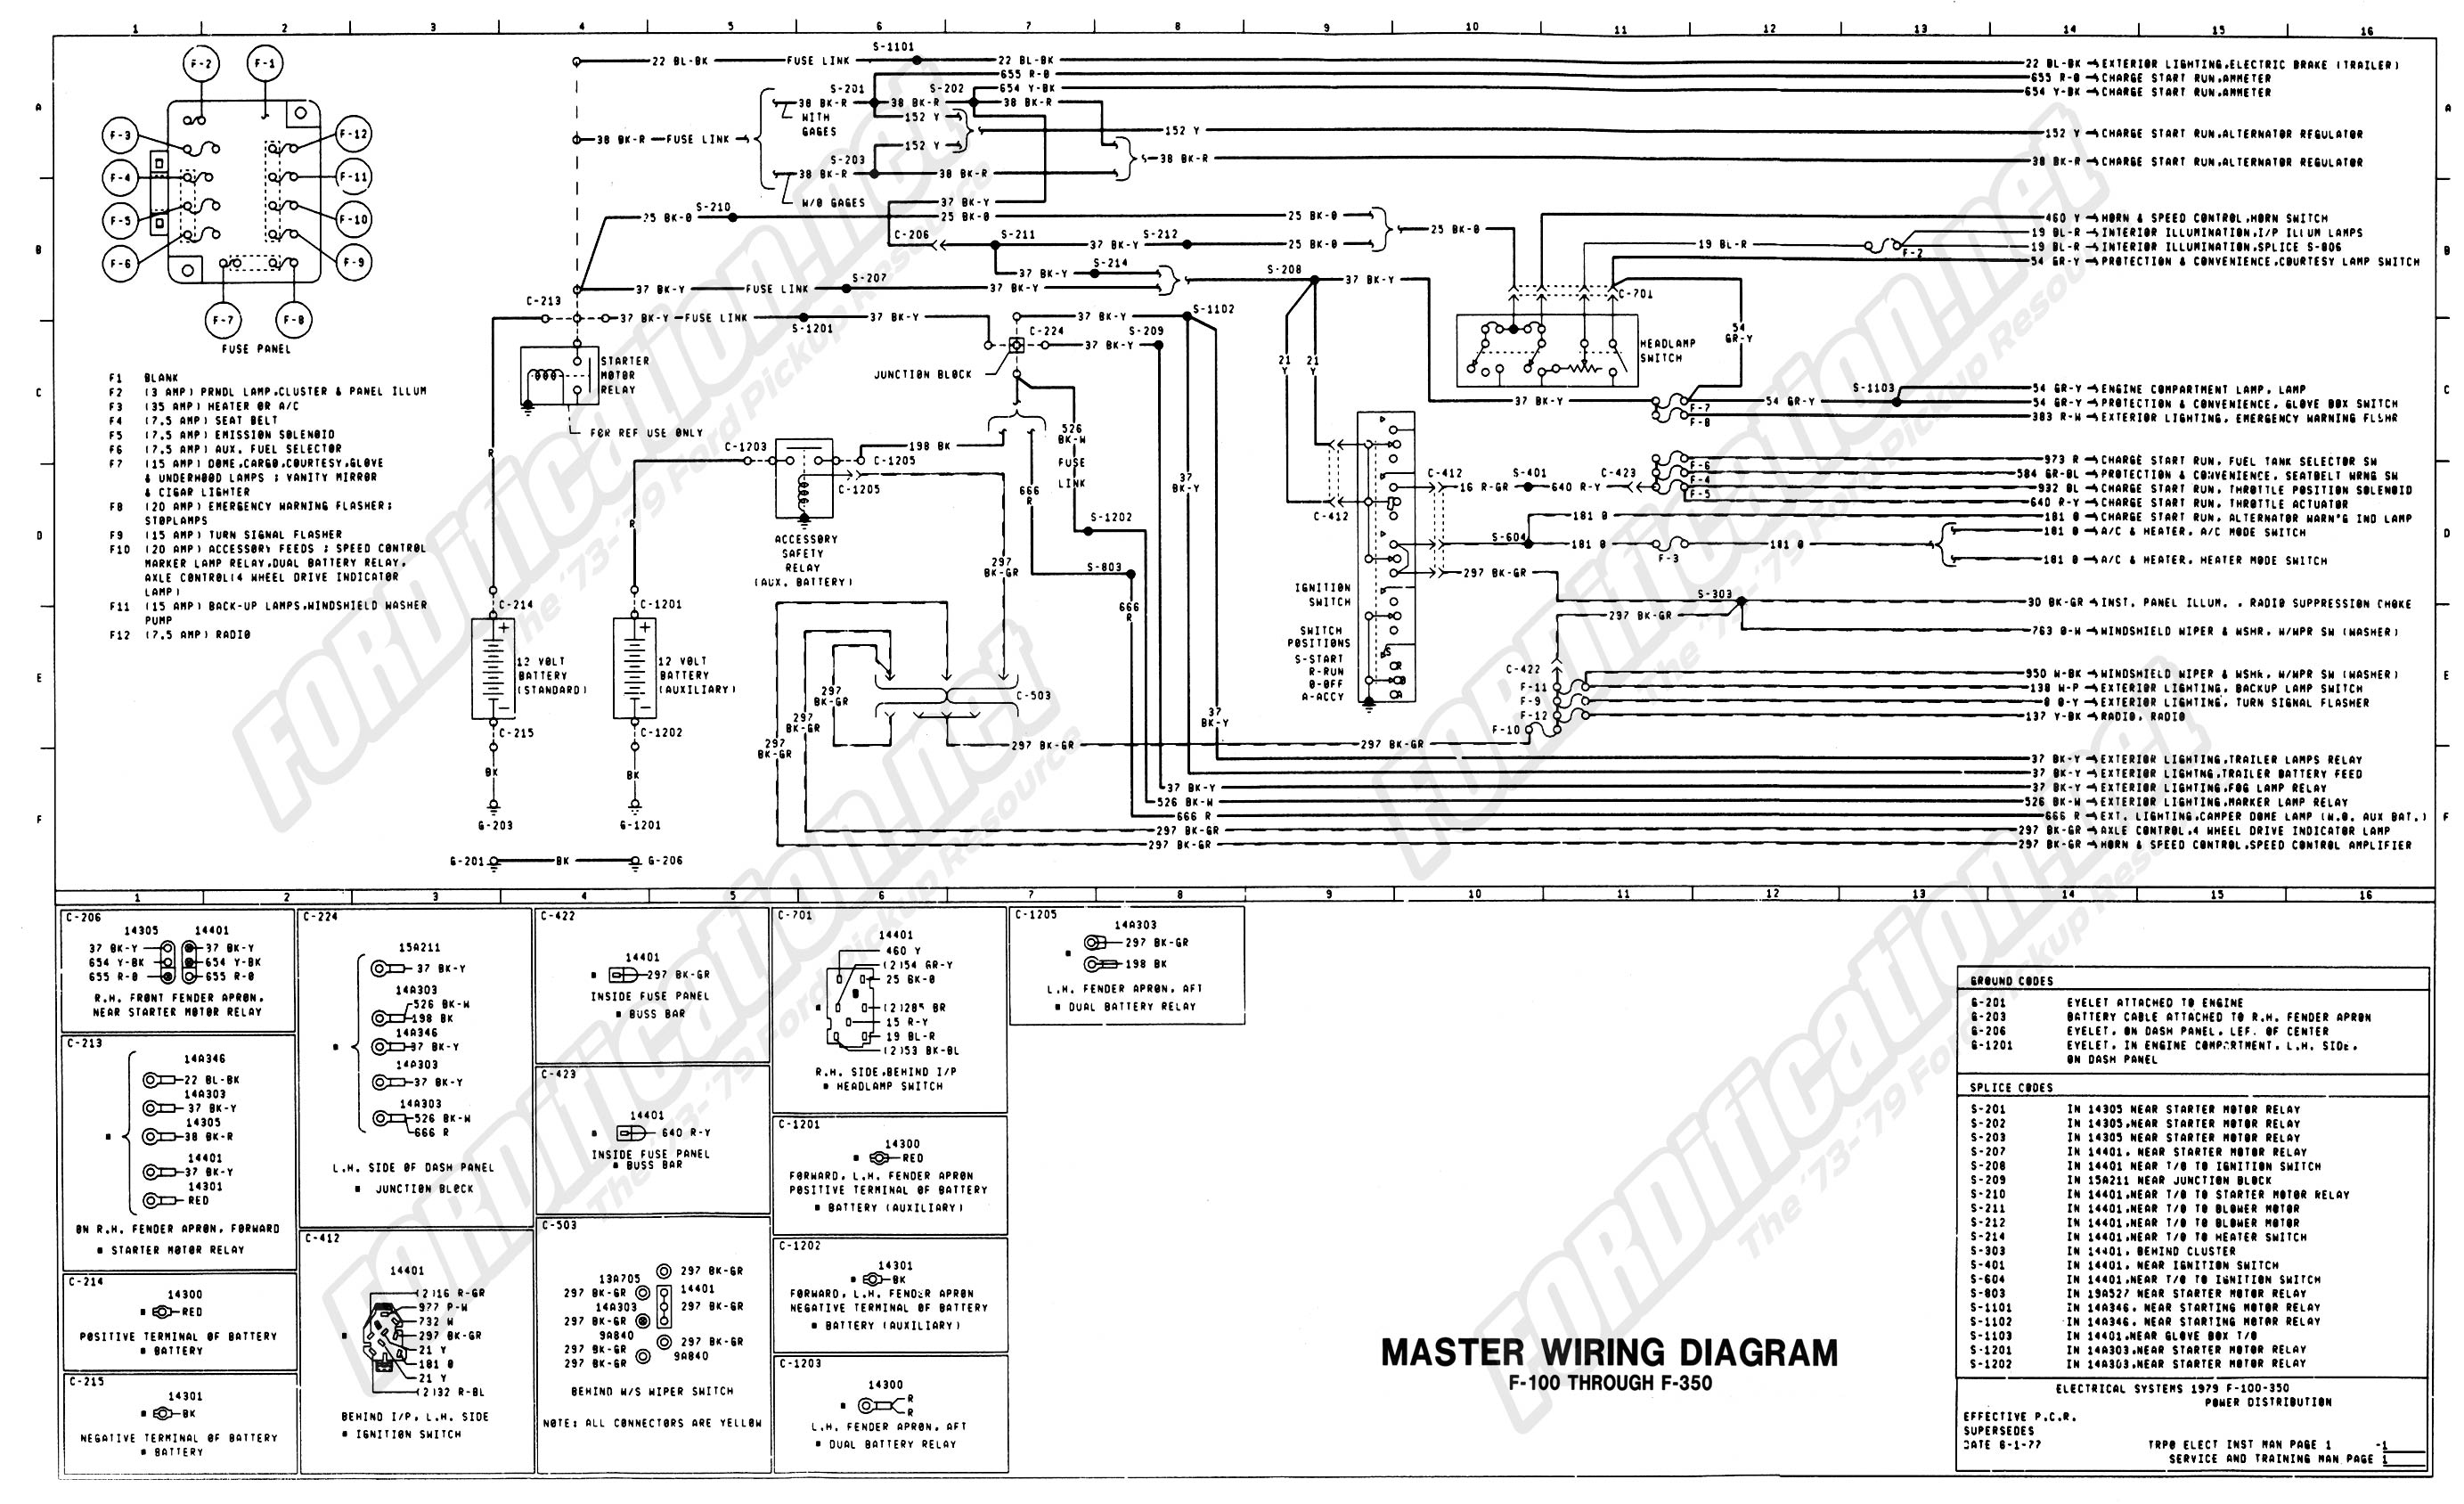 1979 Ford van wiring diagram #10